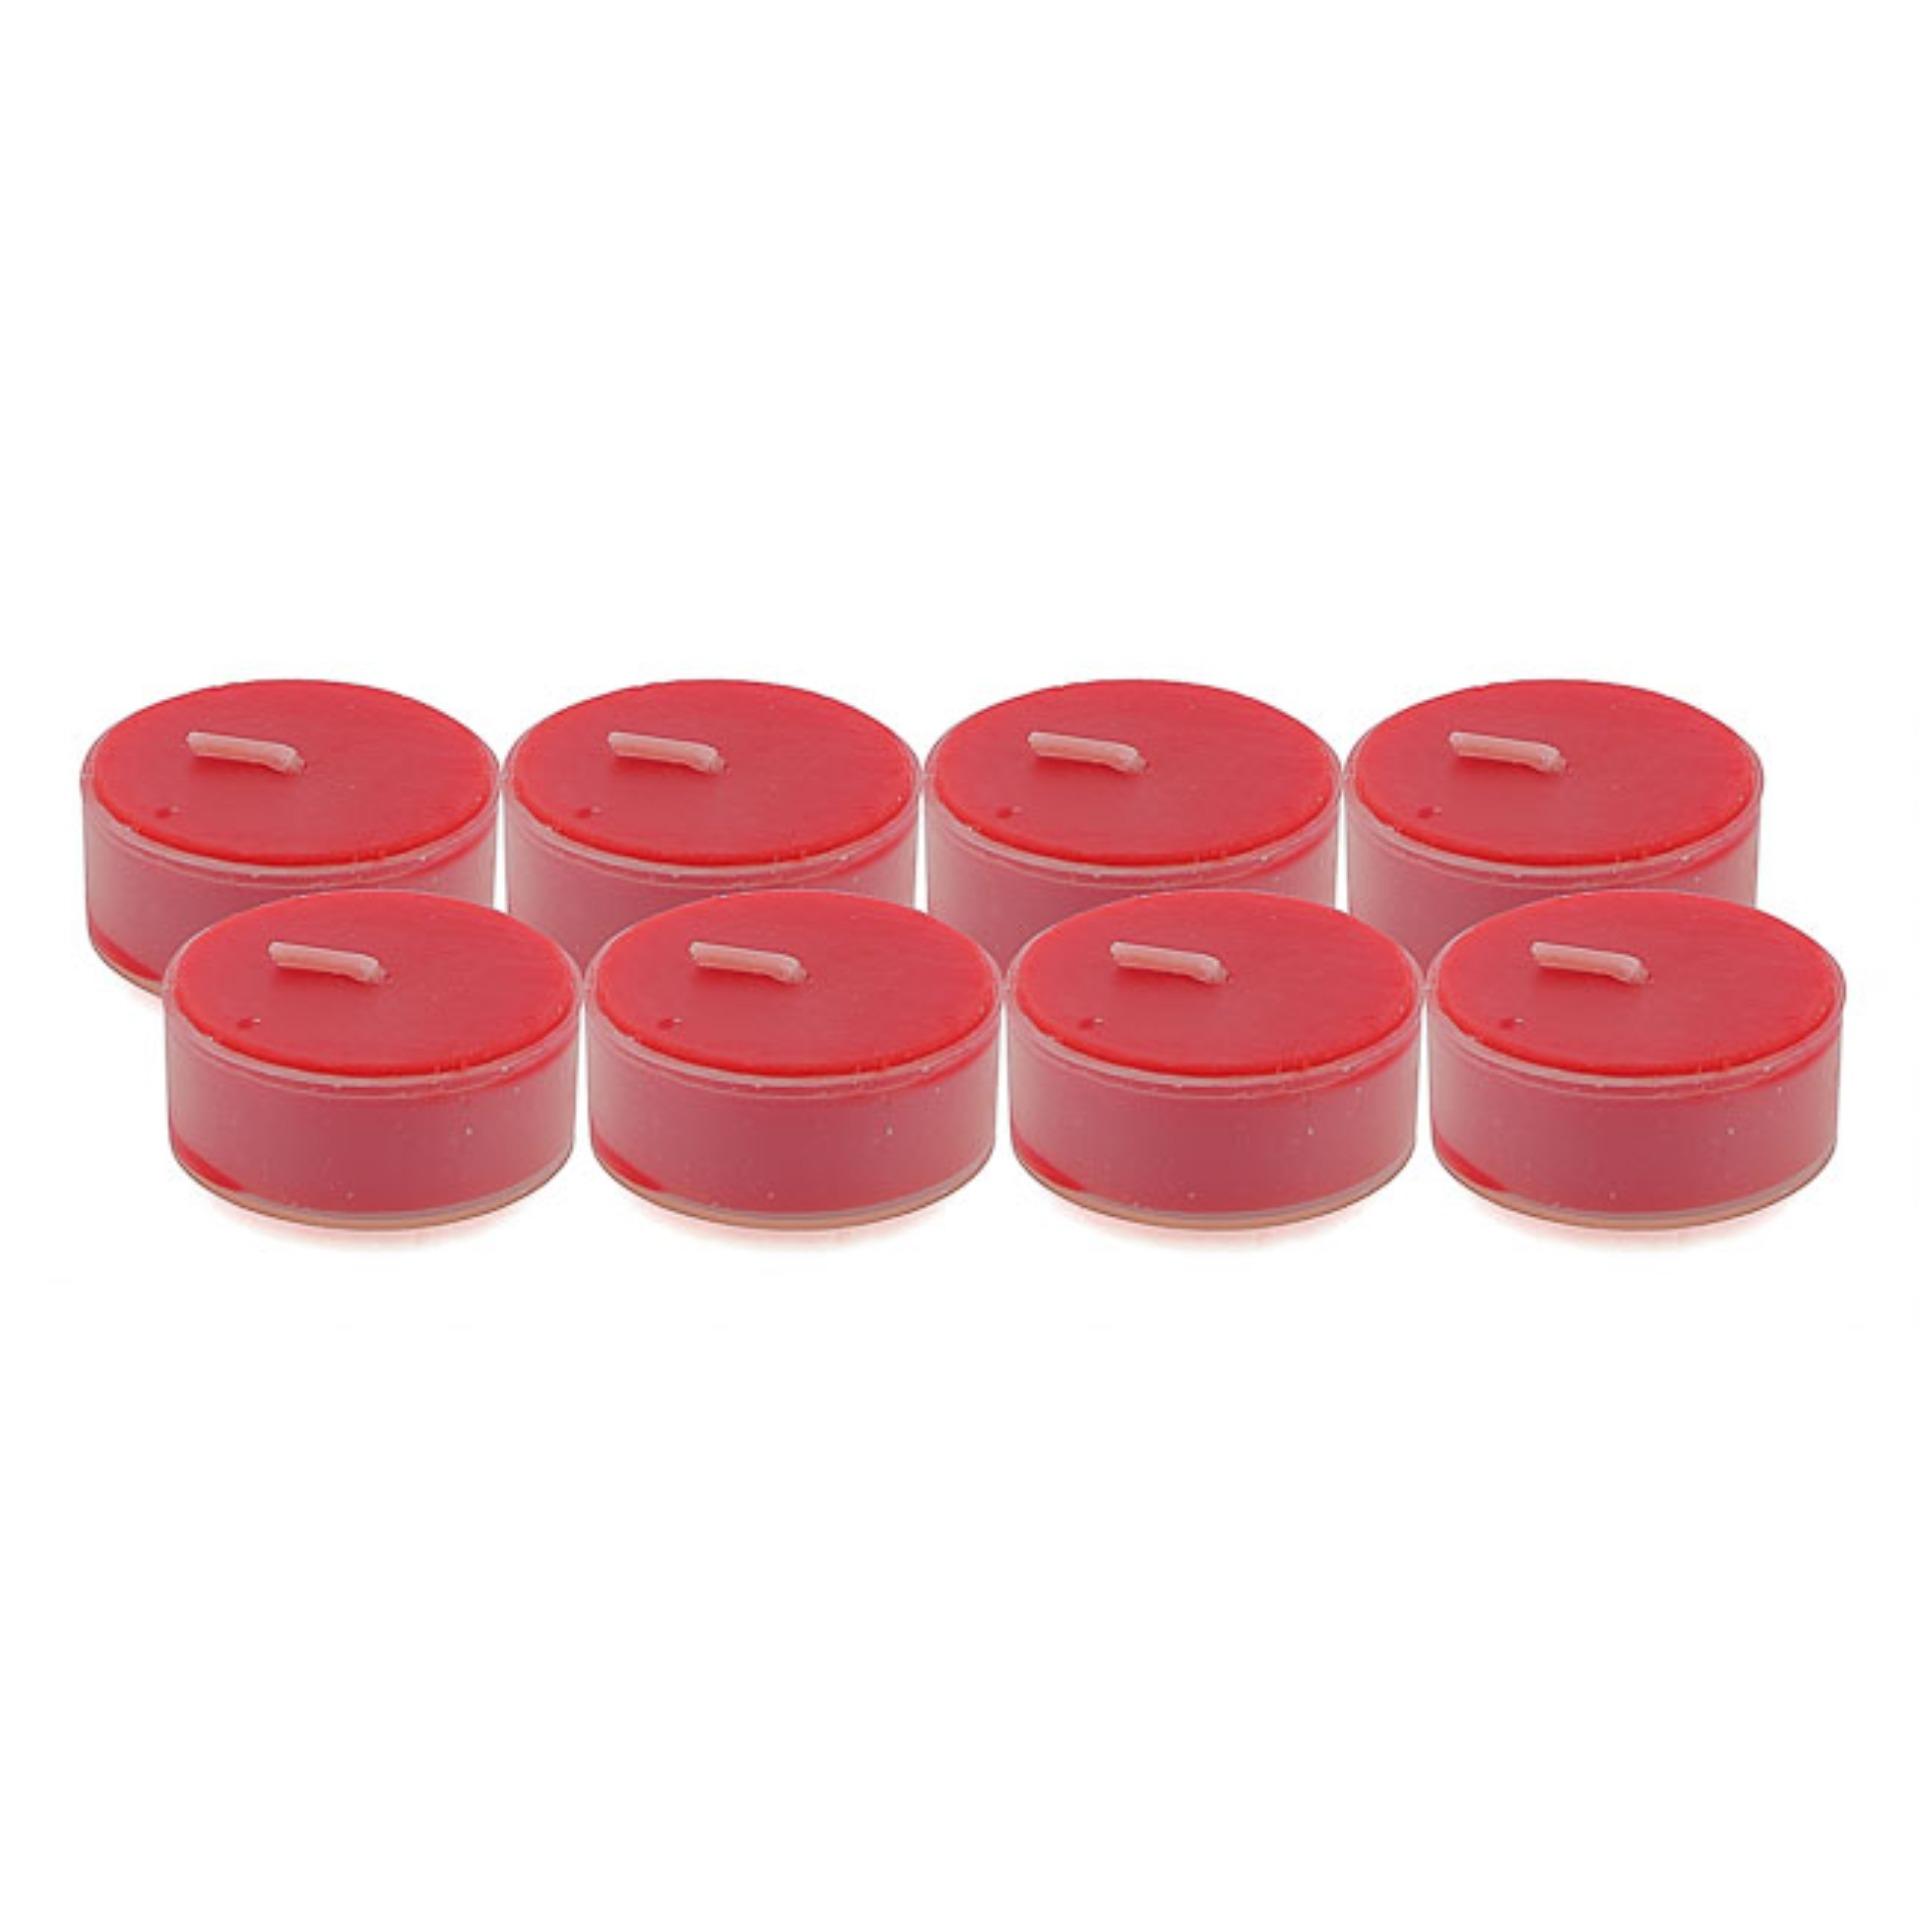 Bộ 6 hộp nến tealight thơm đế nhựa (8 nến/hộp) NQM FtraMart (Đỏ)